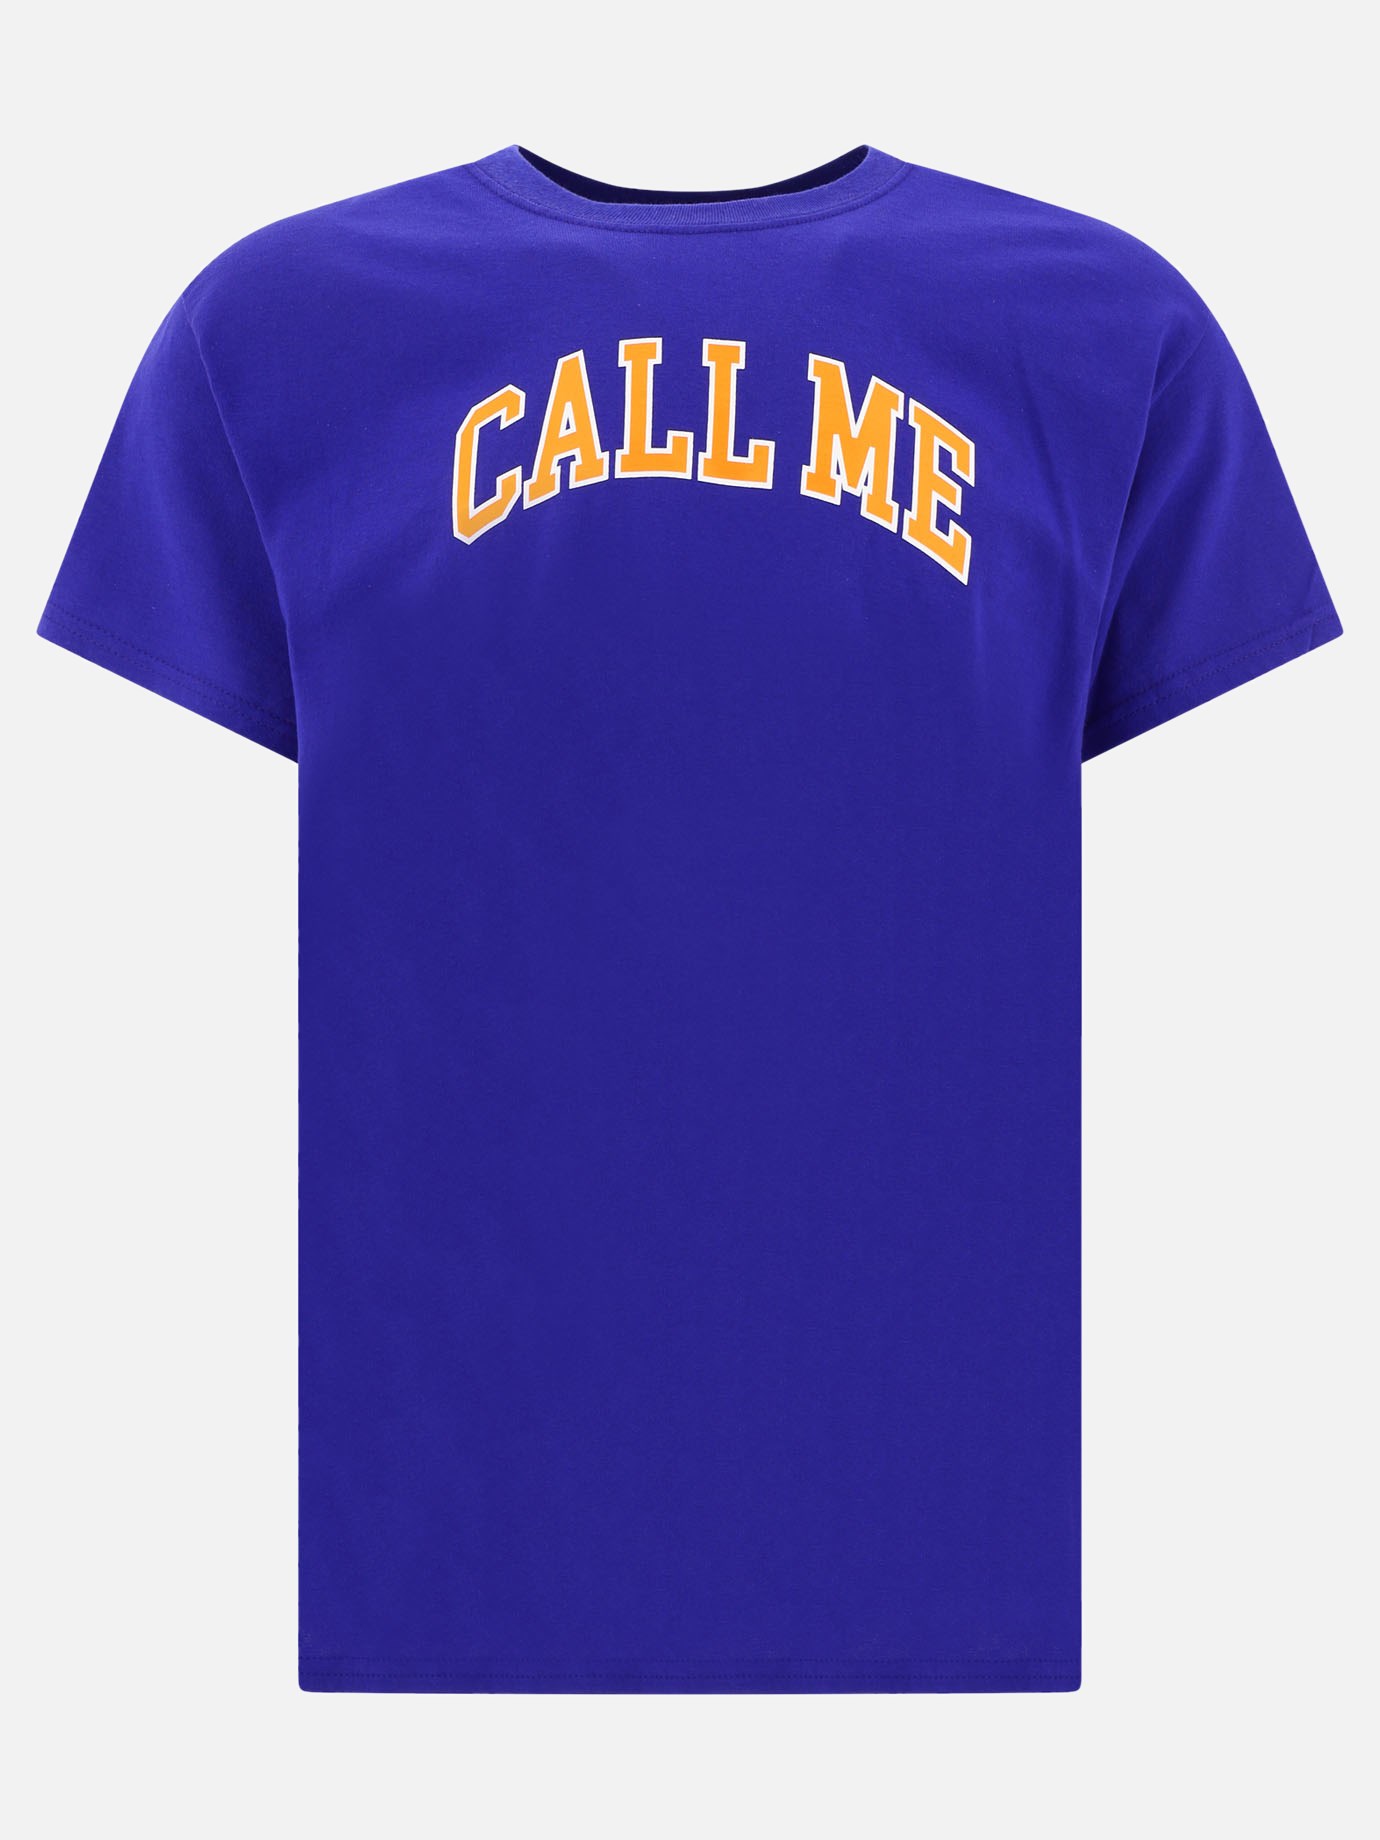  Call Me  t-shirtby Call Me 917 - 0